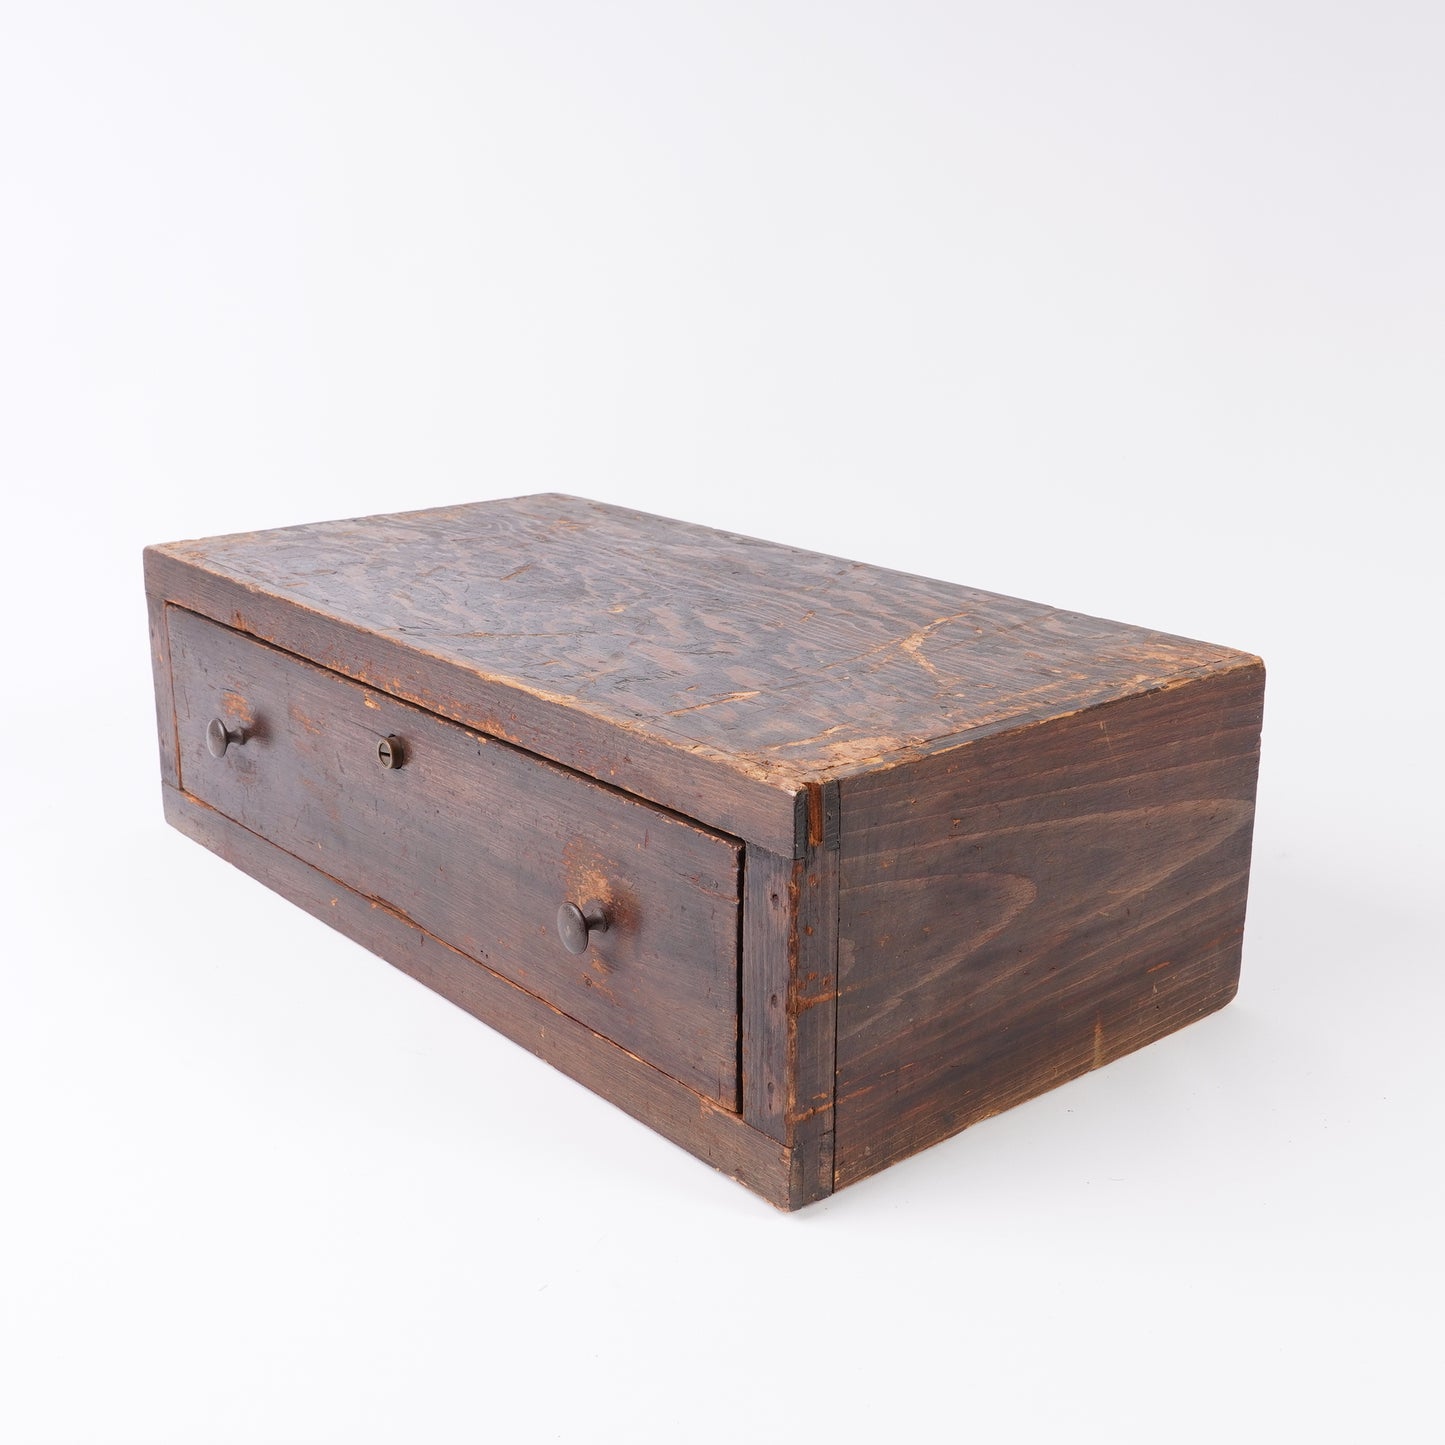 Vintage Wooden Single Drawer Cabinet